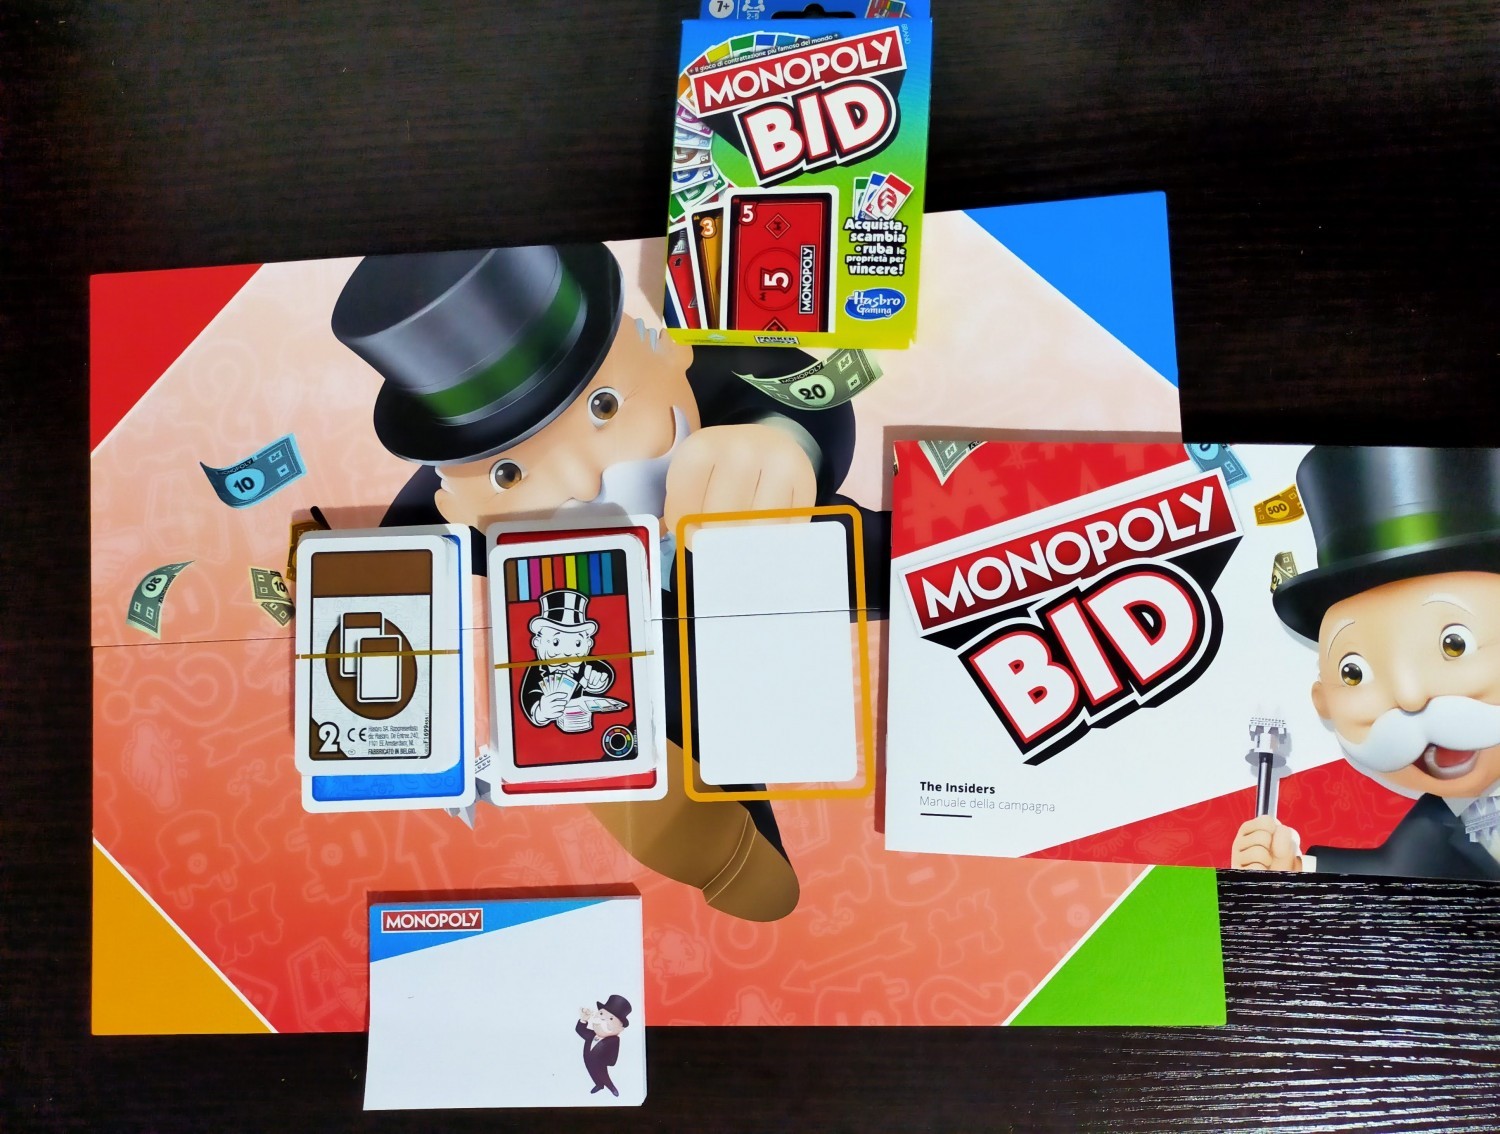 monopoly bid